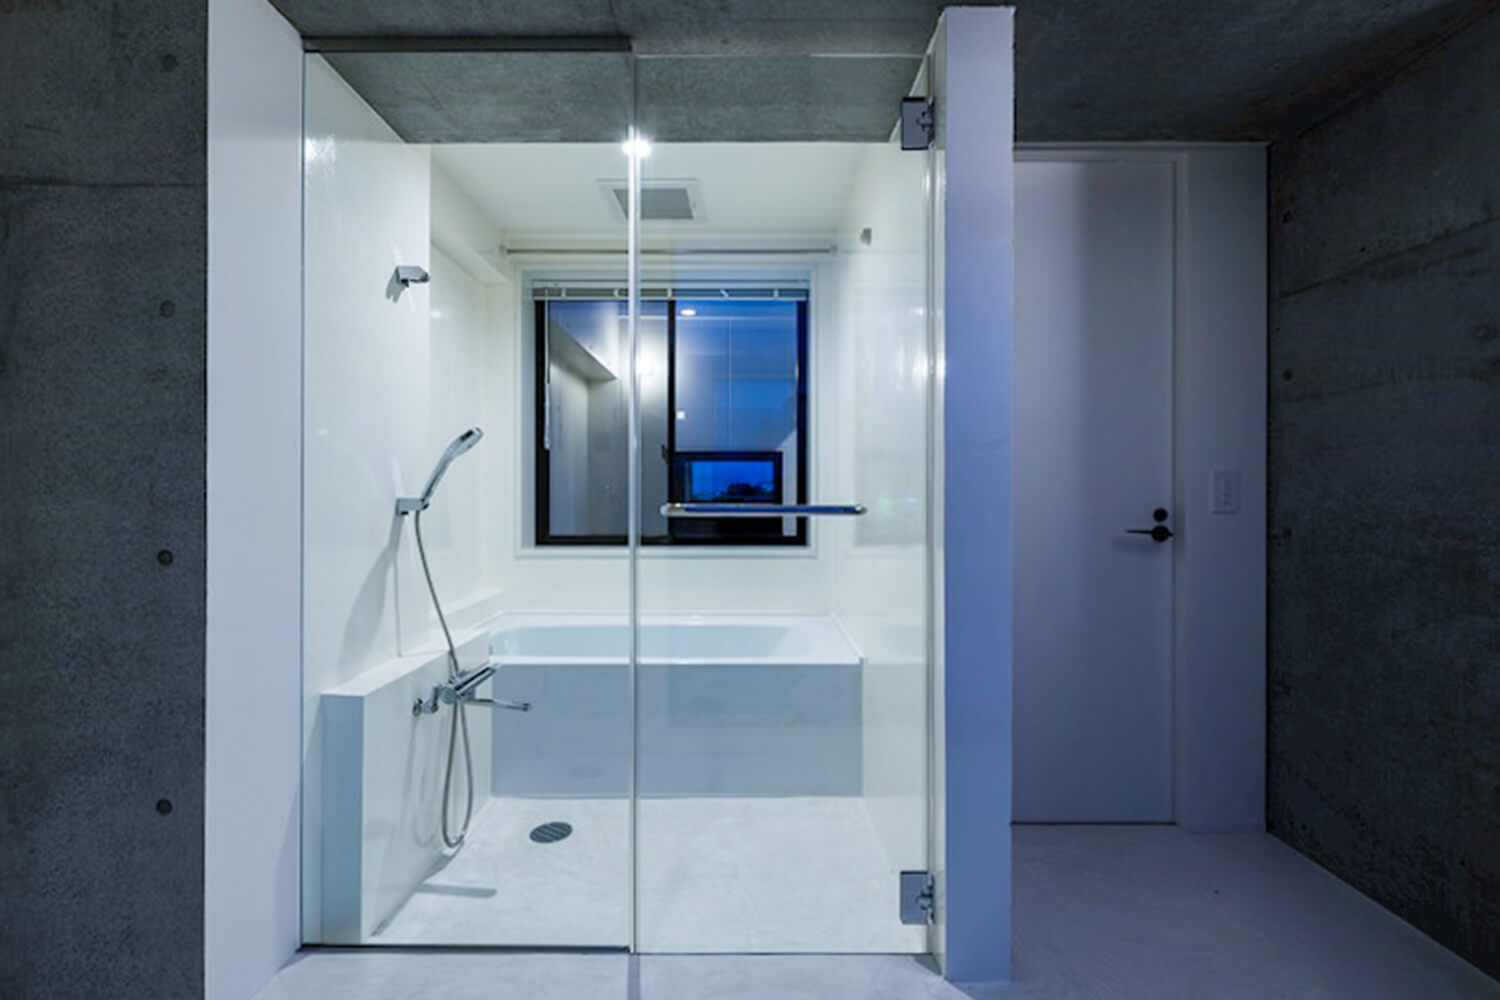 この画像は吉富興産企画デザイナーズマンション浴室の写真です。